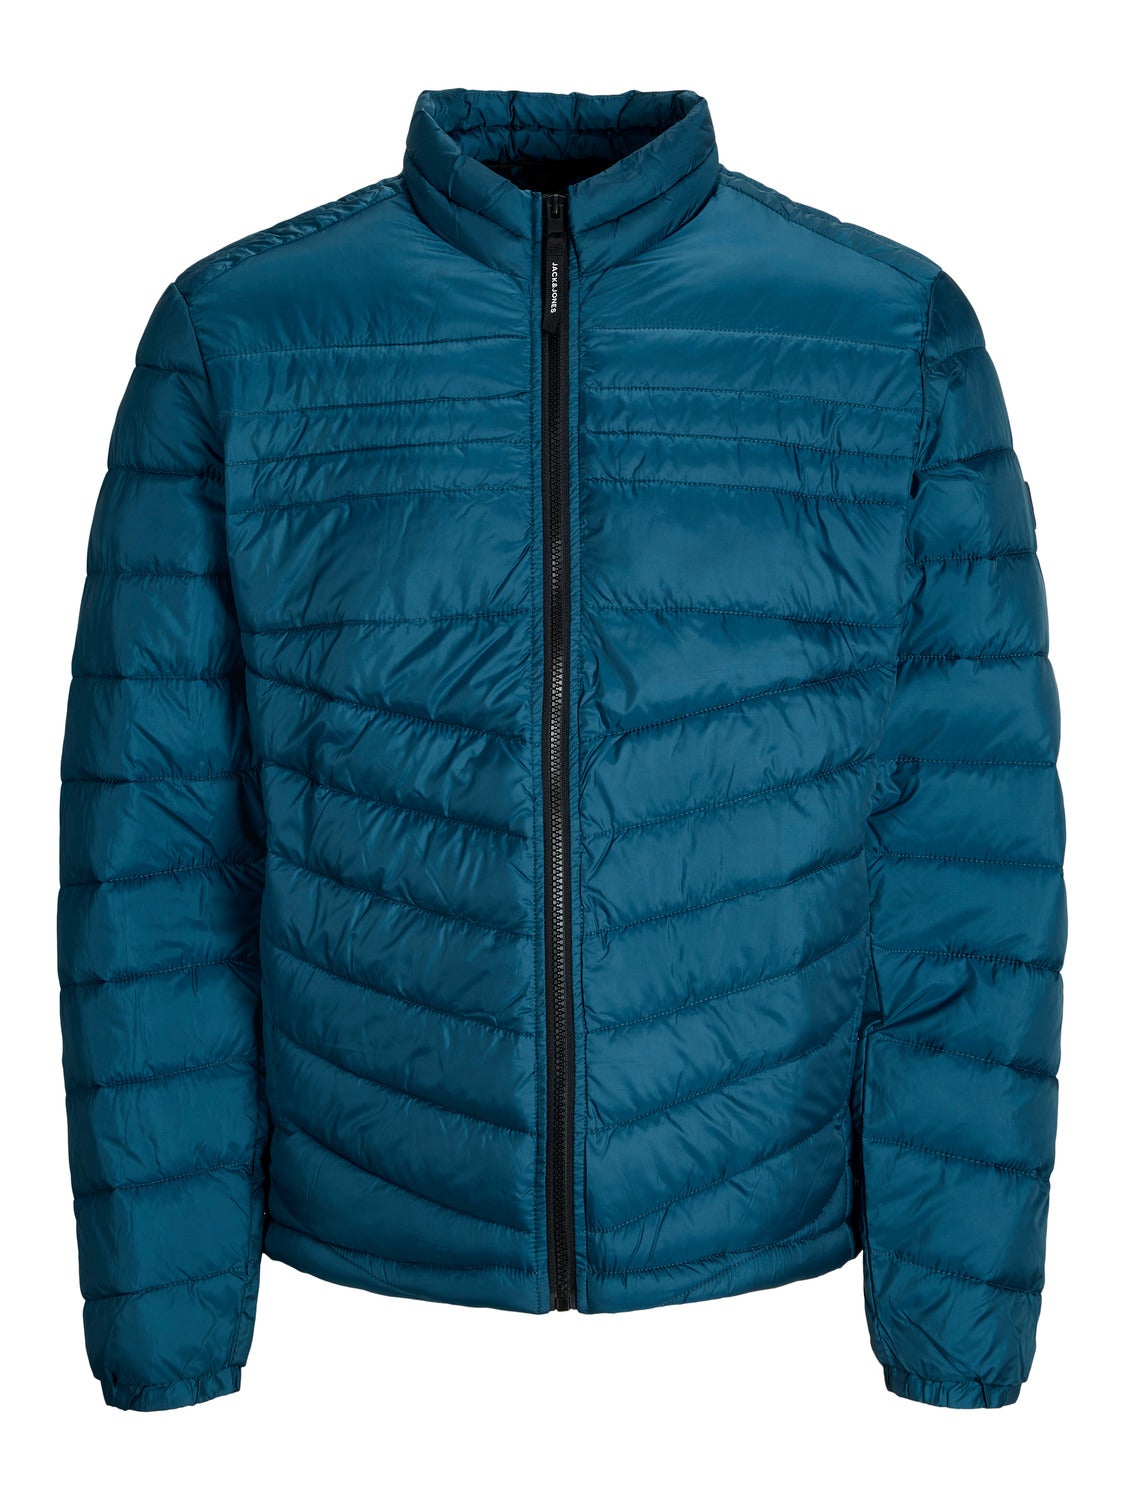 Jack & Jones Originals puffer jacket in blue cloud print